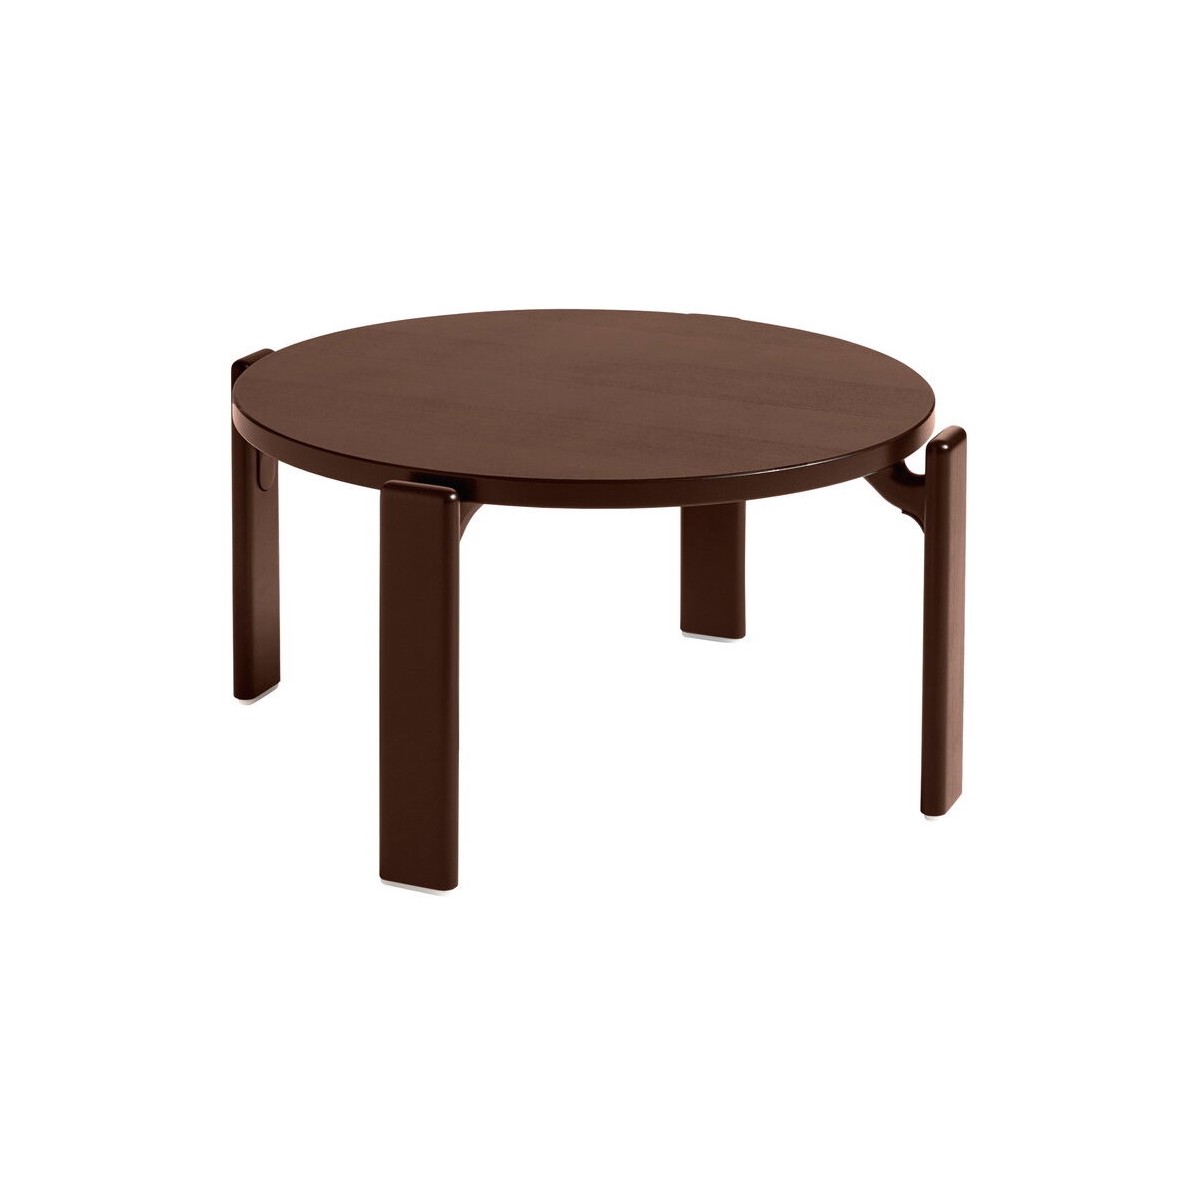 Umber brown - REY coffee table